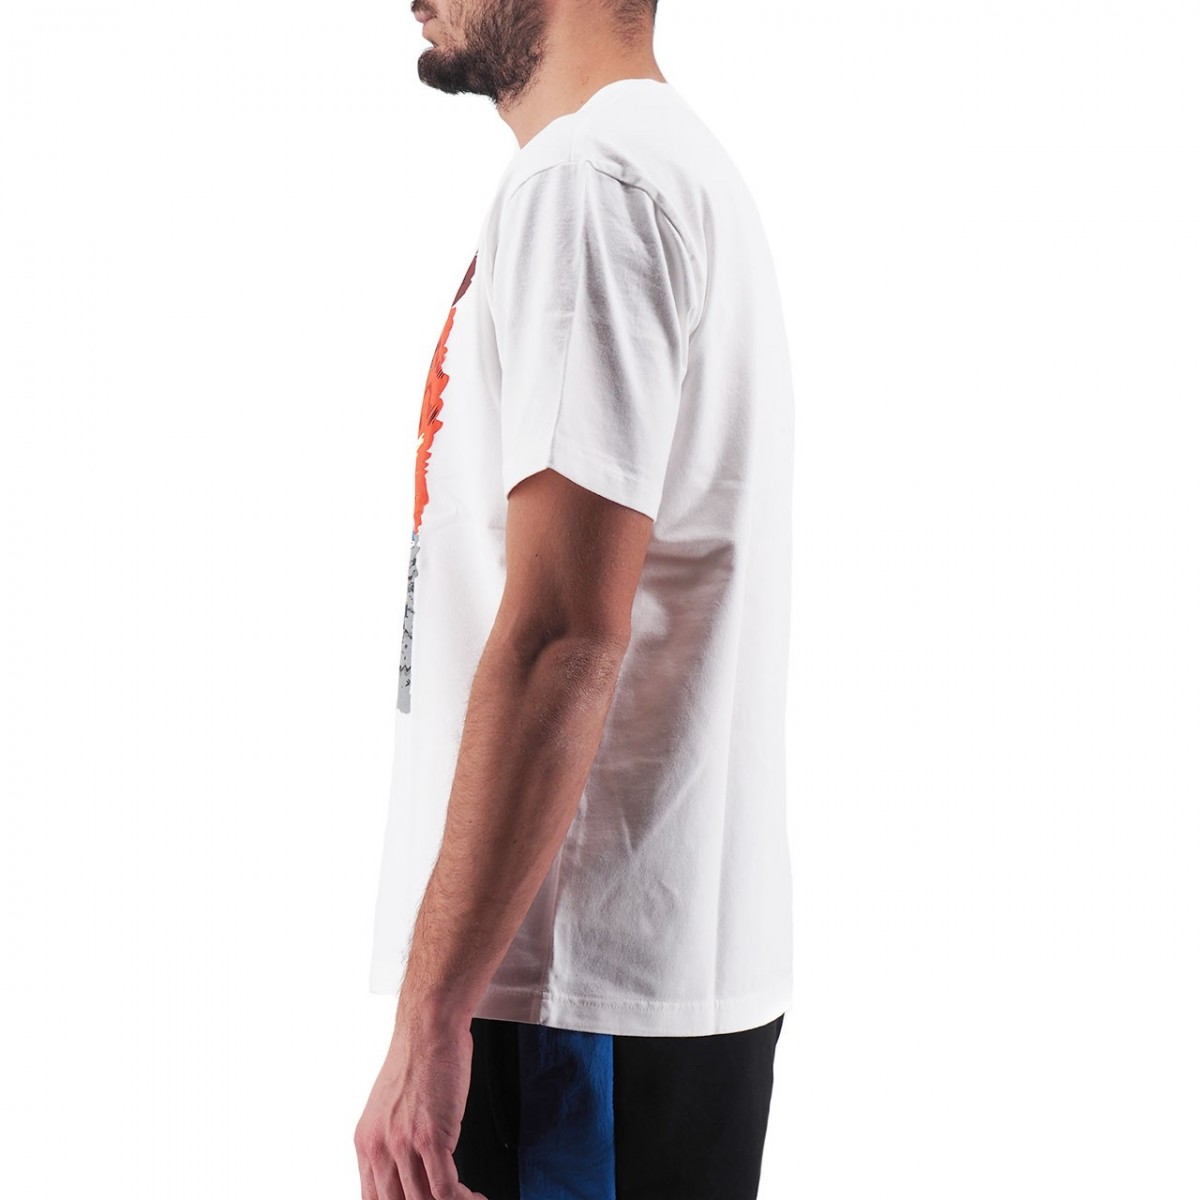 New Balance | Artist Pack Stride T-Shirt, White | NBMT93526WT